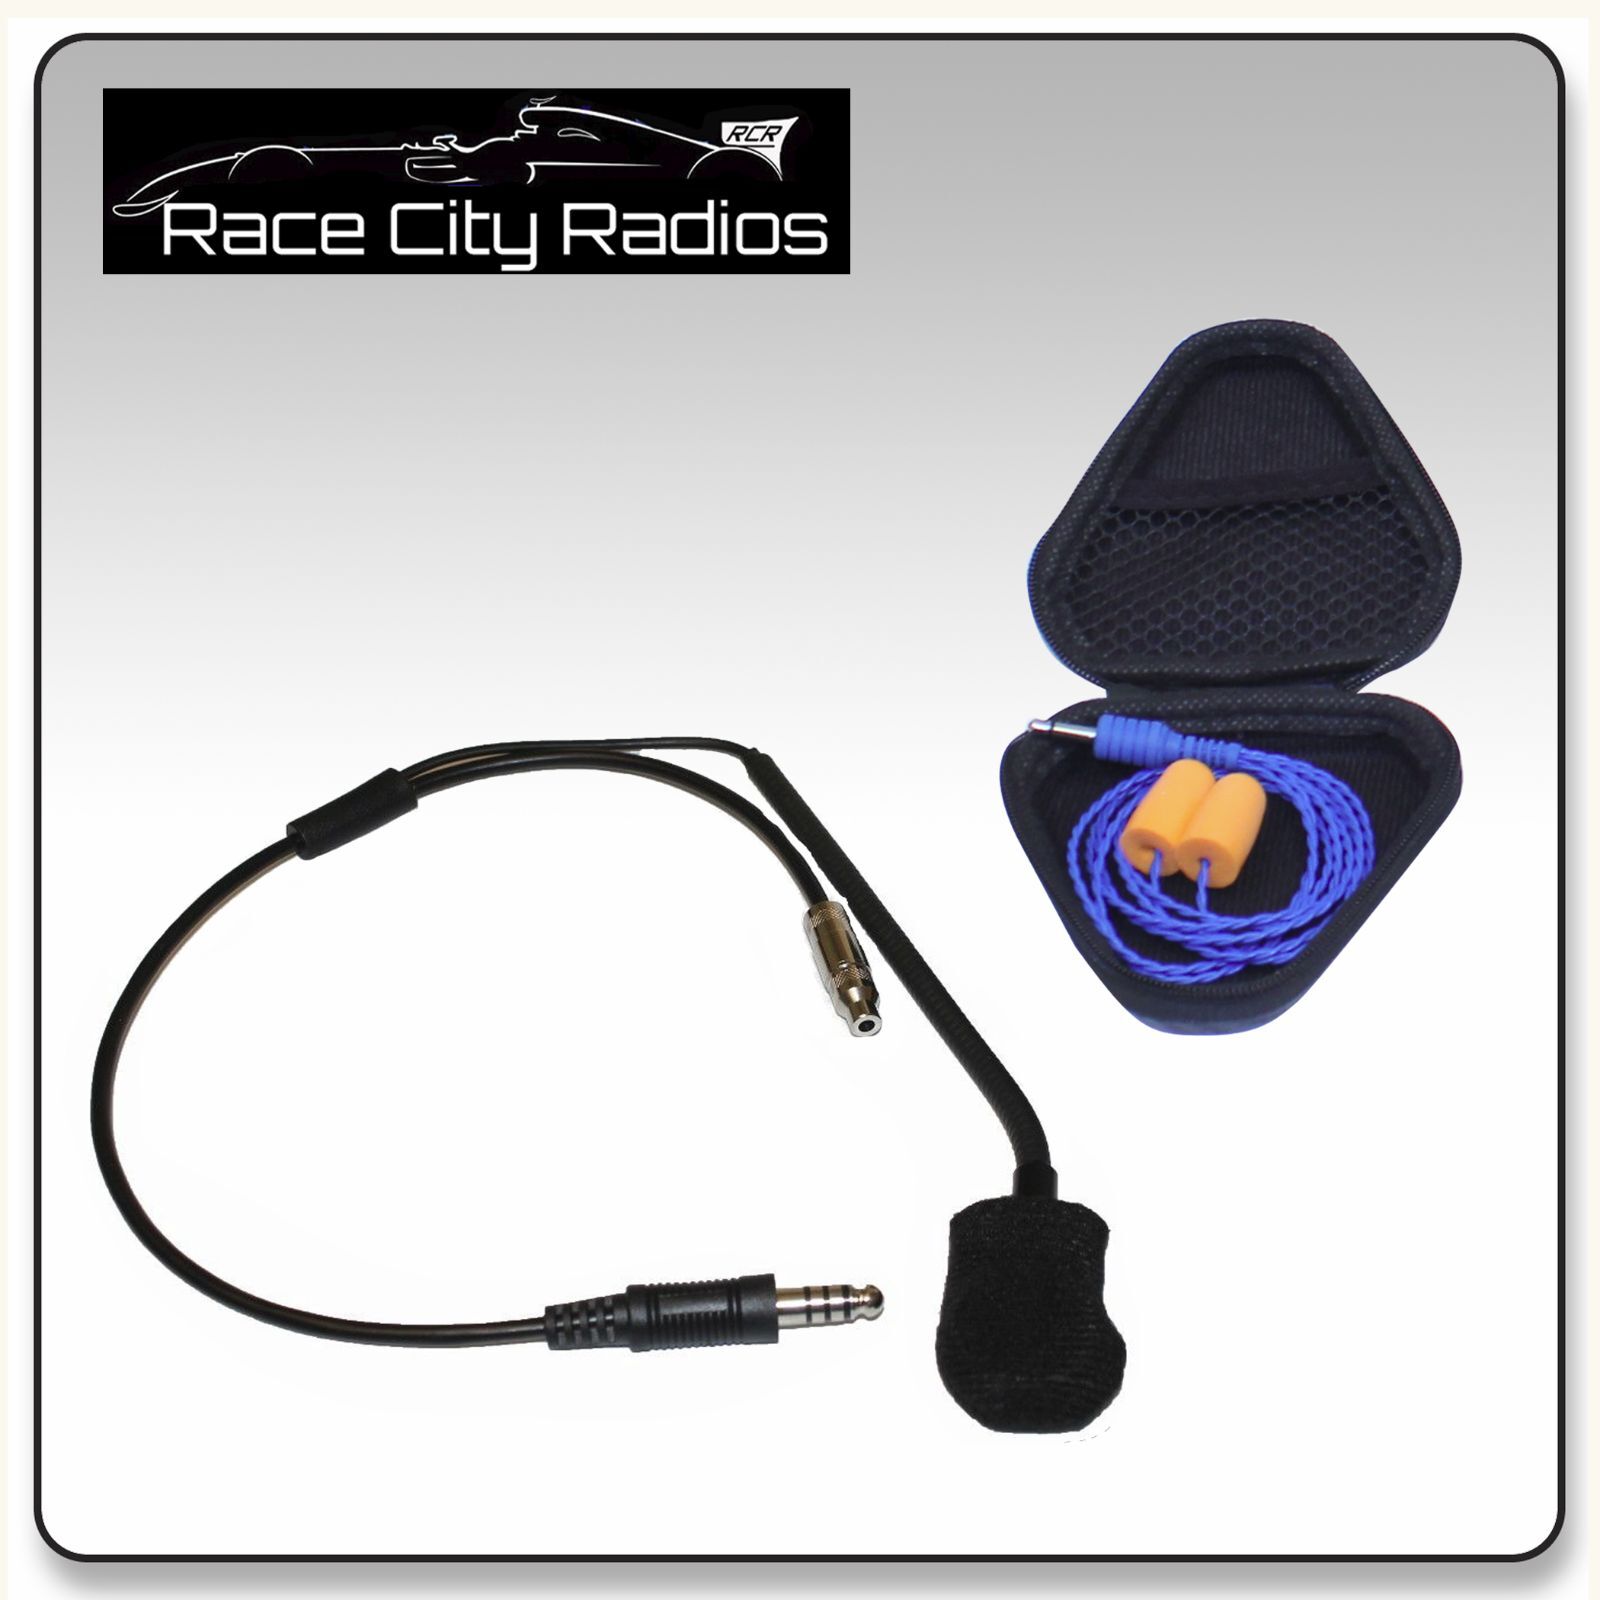 IMSA Racing Helmet Kit w M101 Mic Buds Radios Stilo Arai Ear New life Max 63% OFF HD